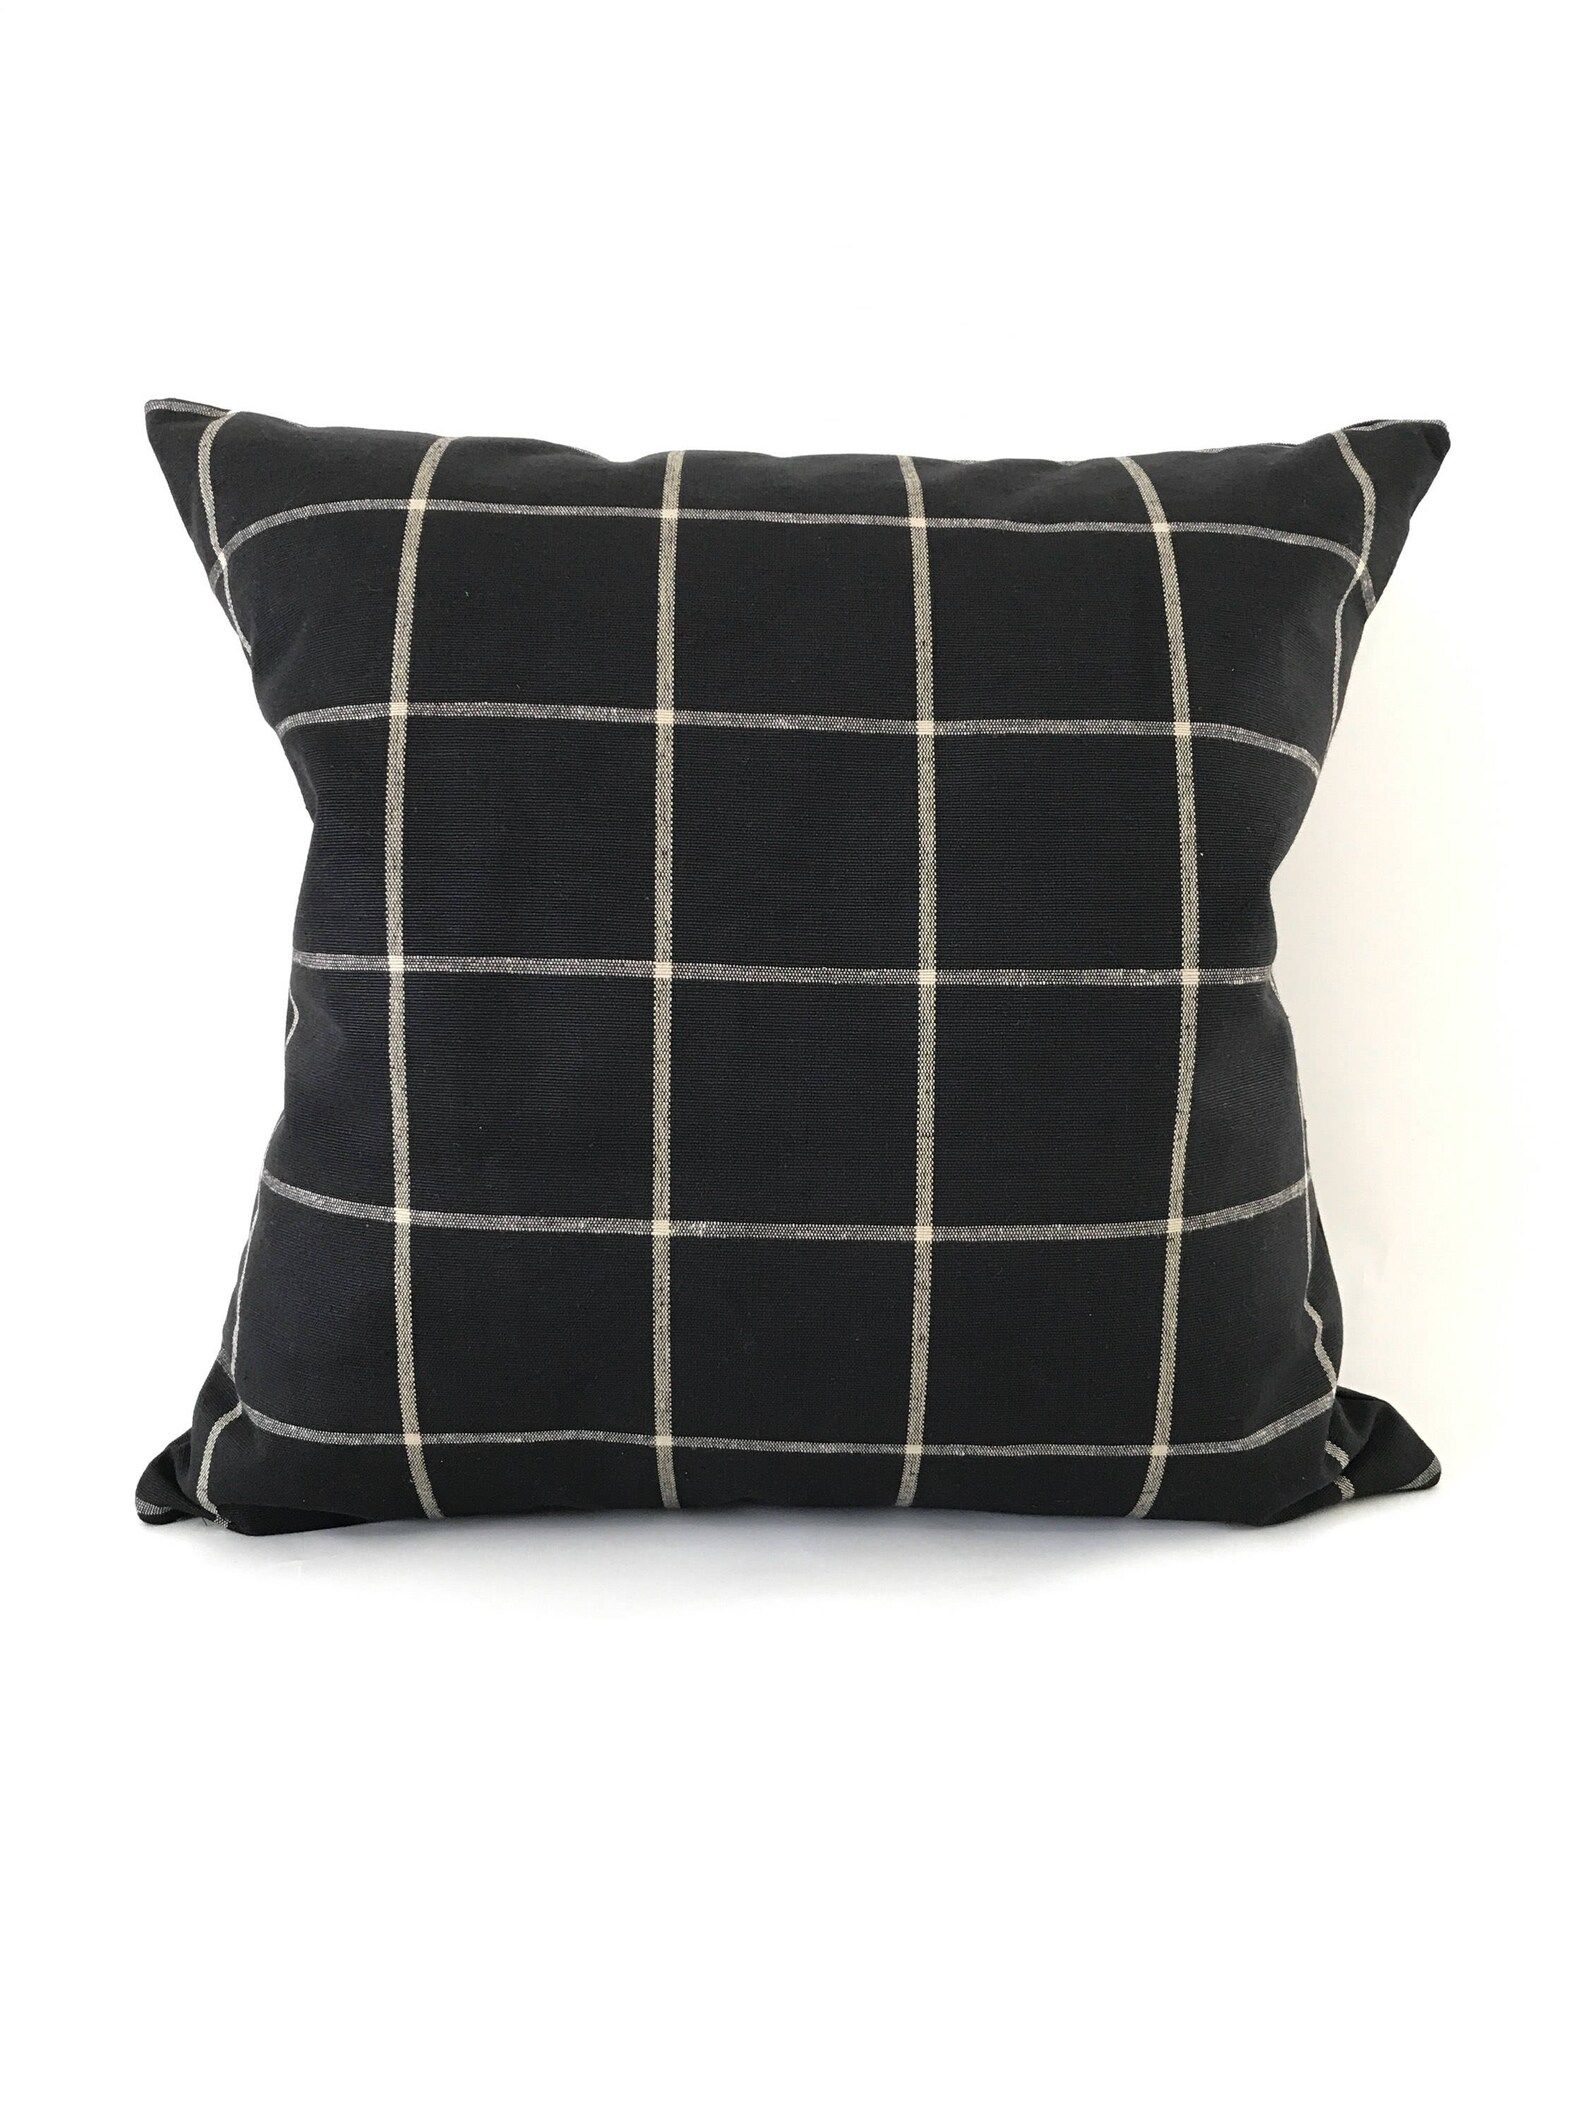 Black Plaid Pillow Cover | Decorative Pillow Cover, Black Pillow Cover, Plaid Pillow Cover, Large... | Etsy (US)